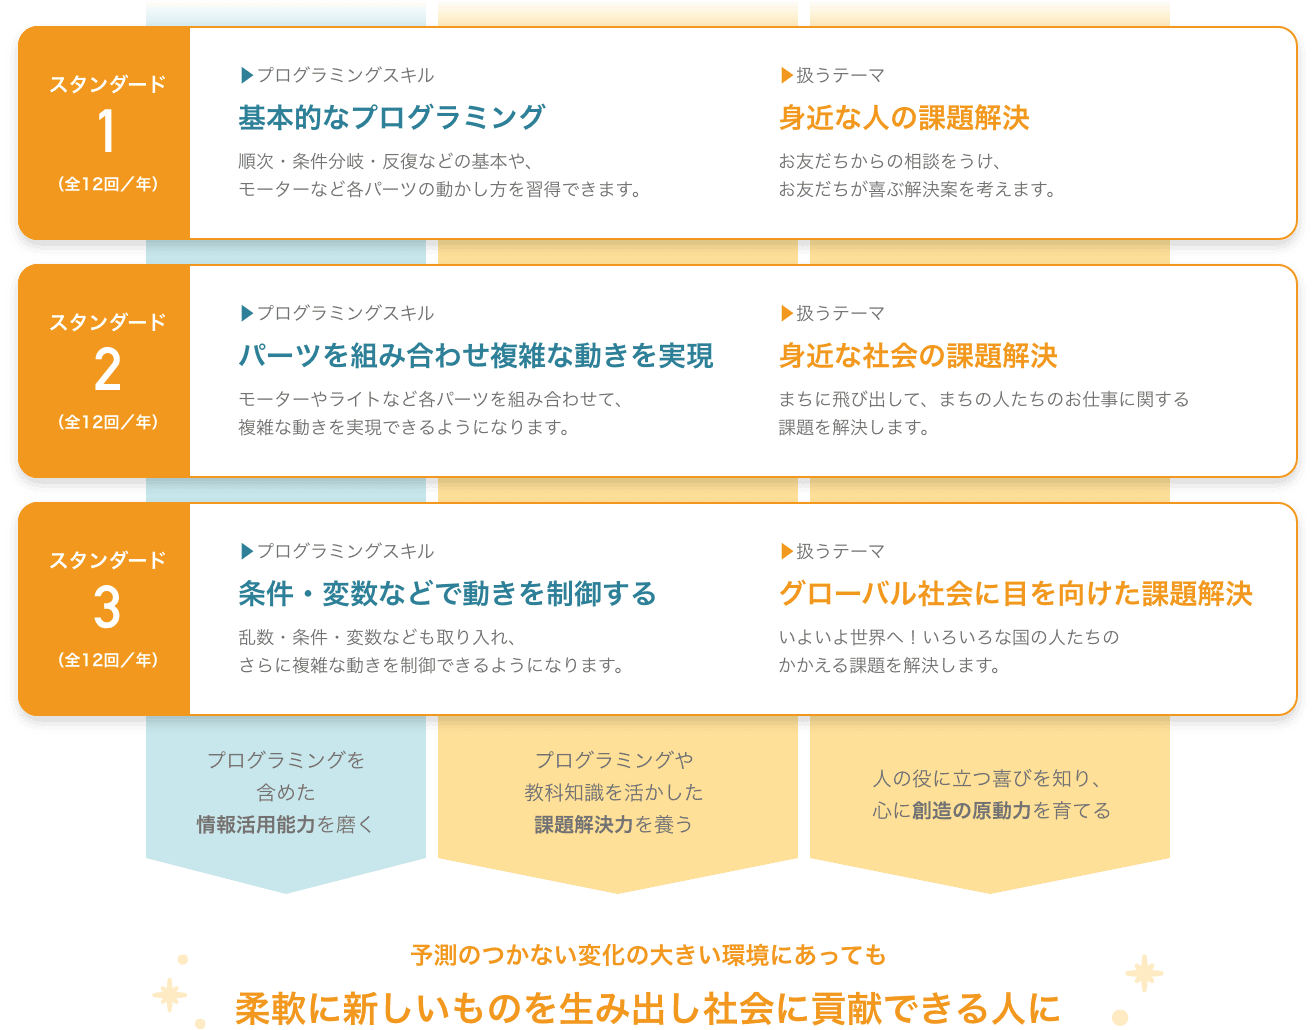 Ｚ会プログラミング講座 みらい with ソニー・グローバル 